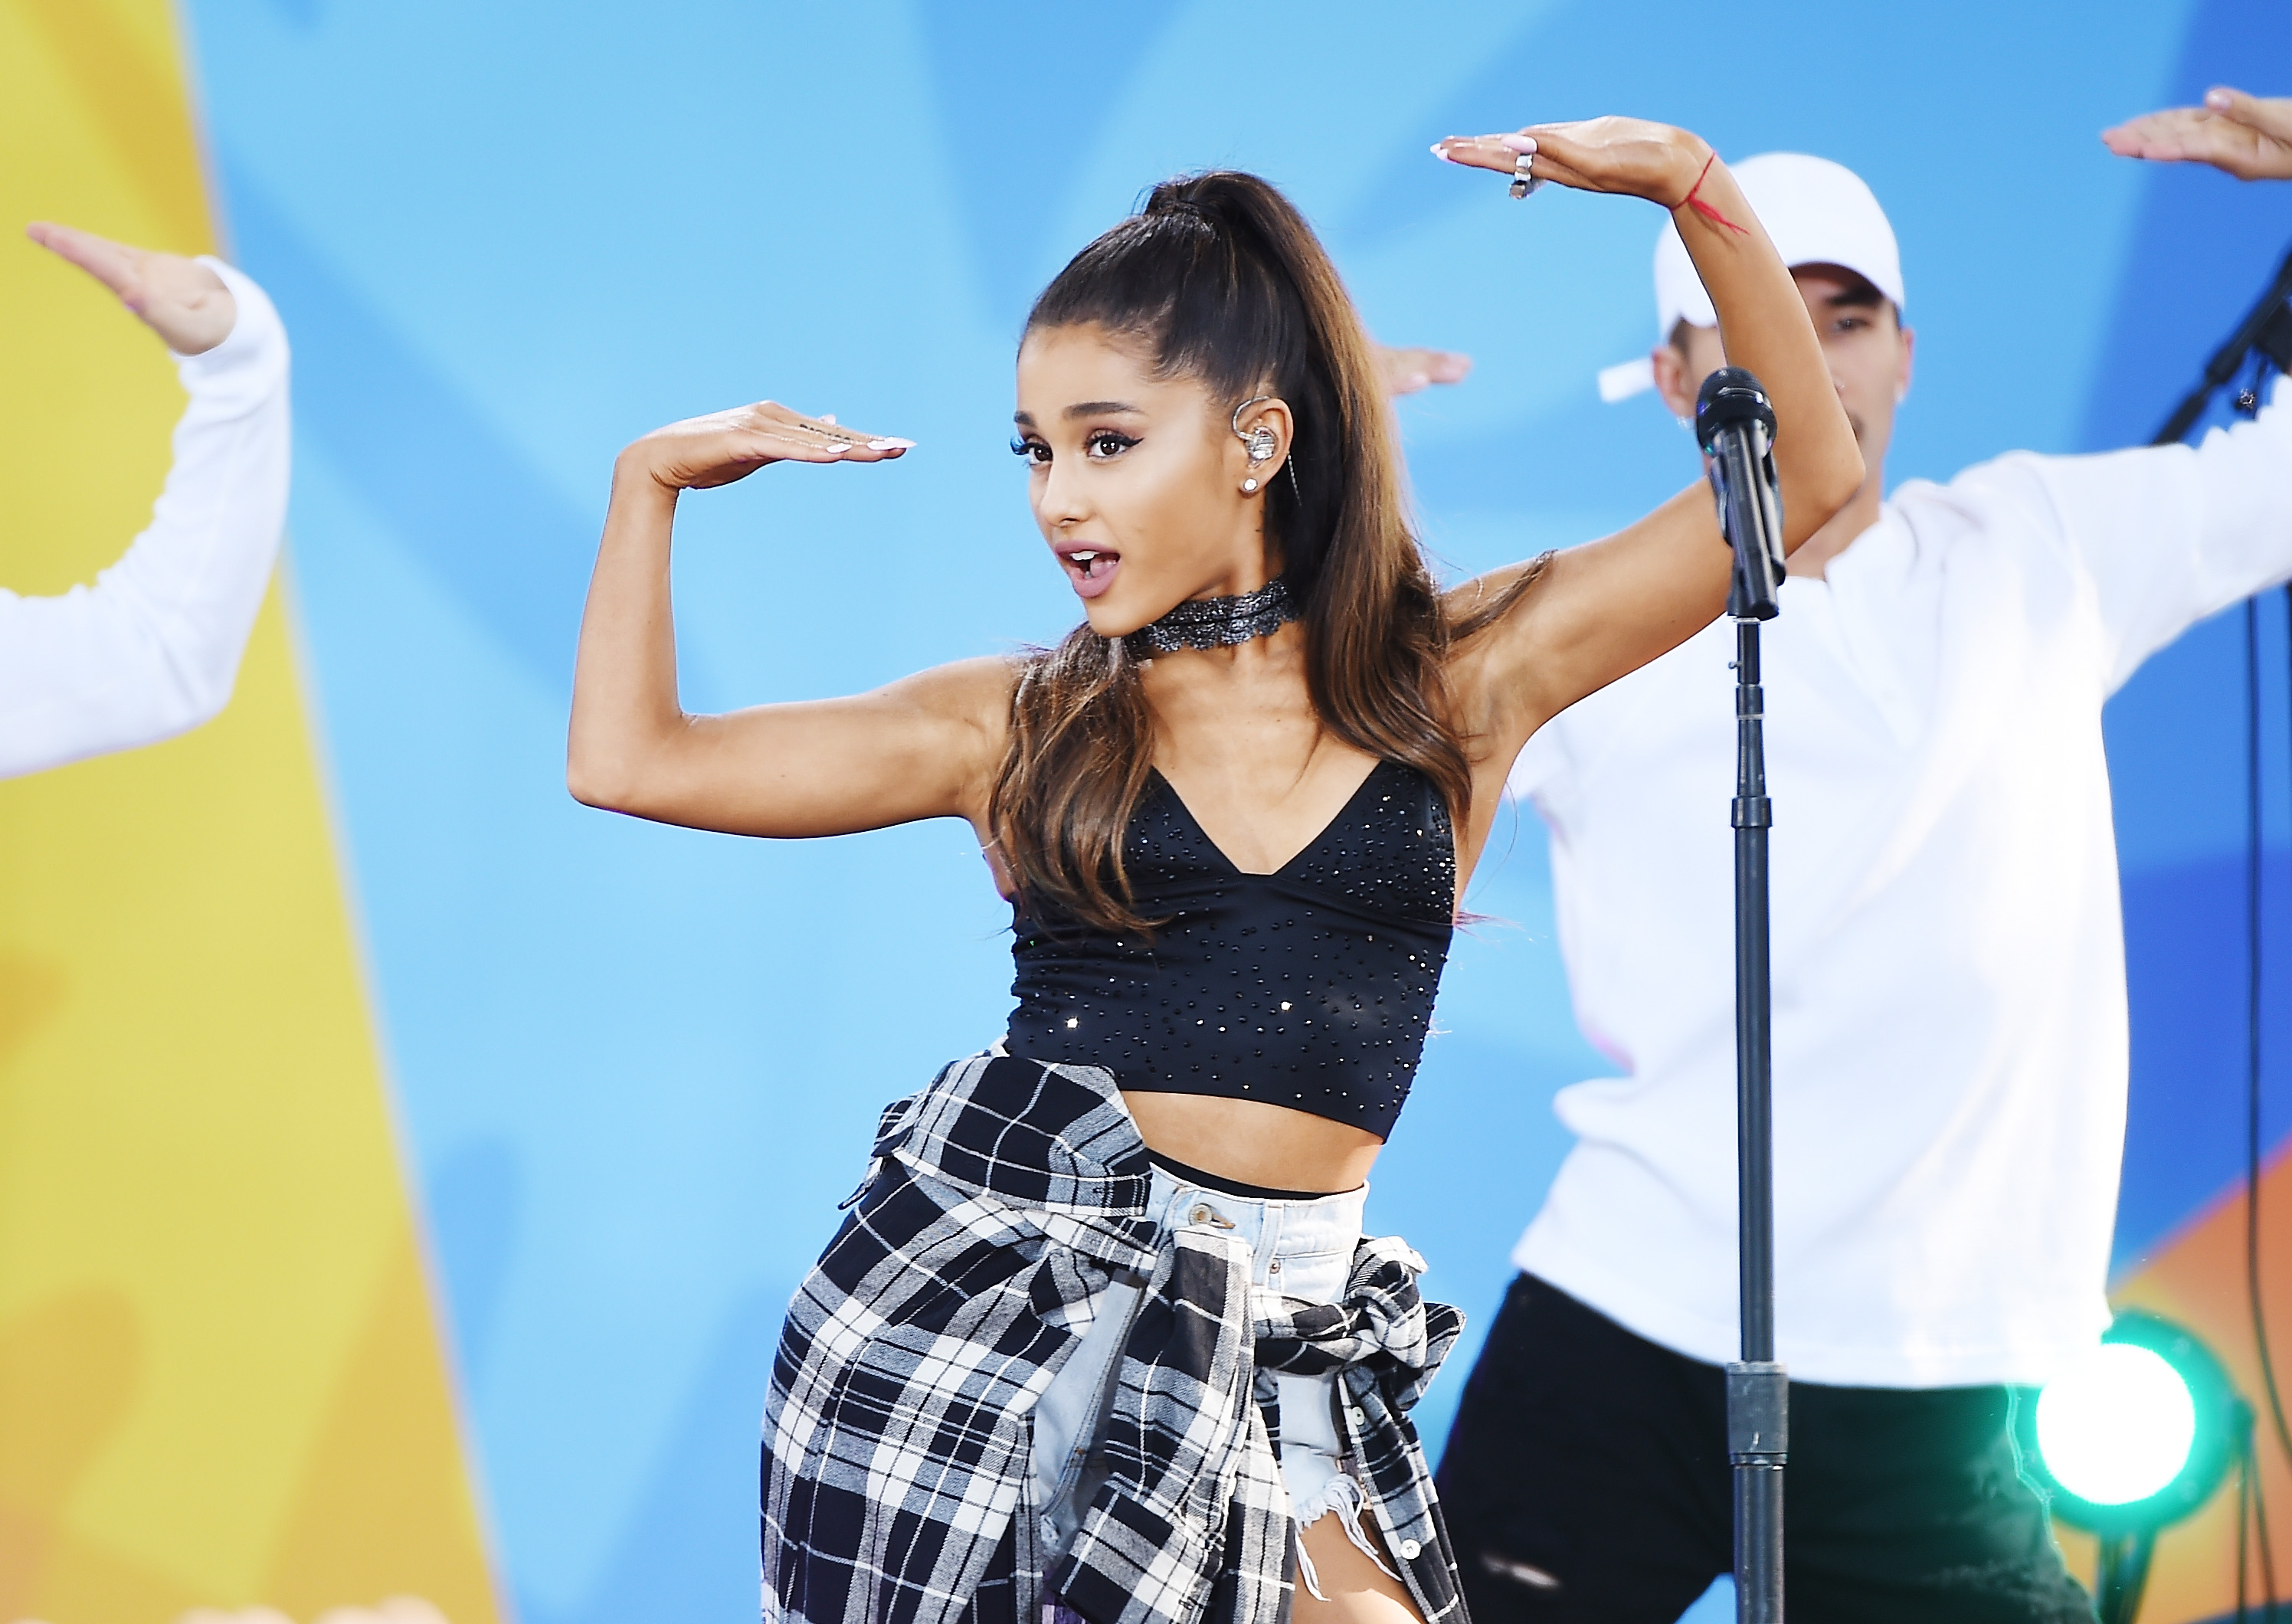 Ariana Grande raising her hands